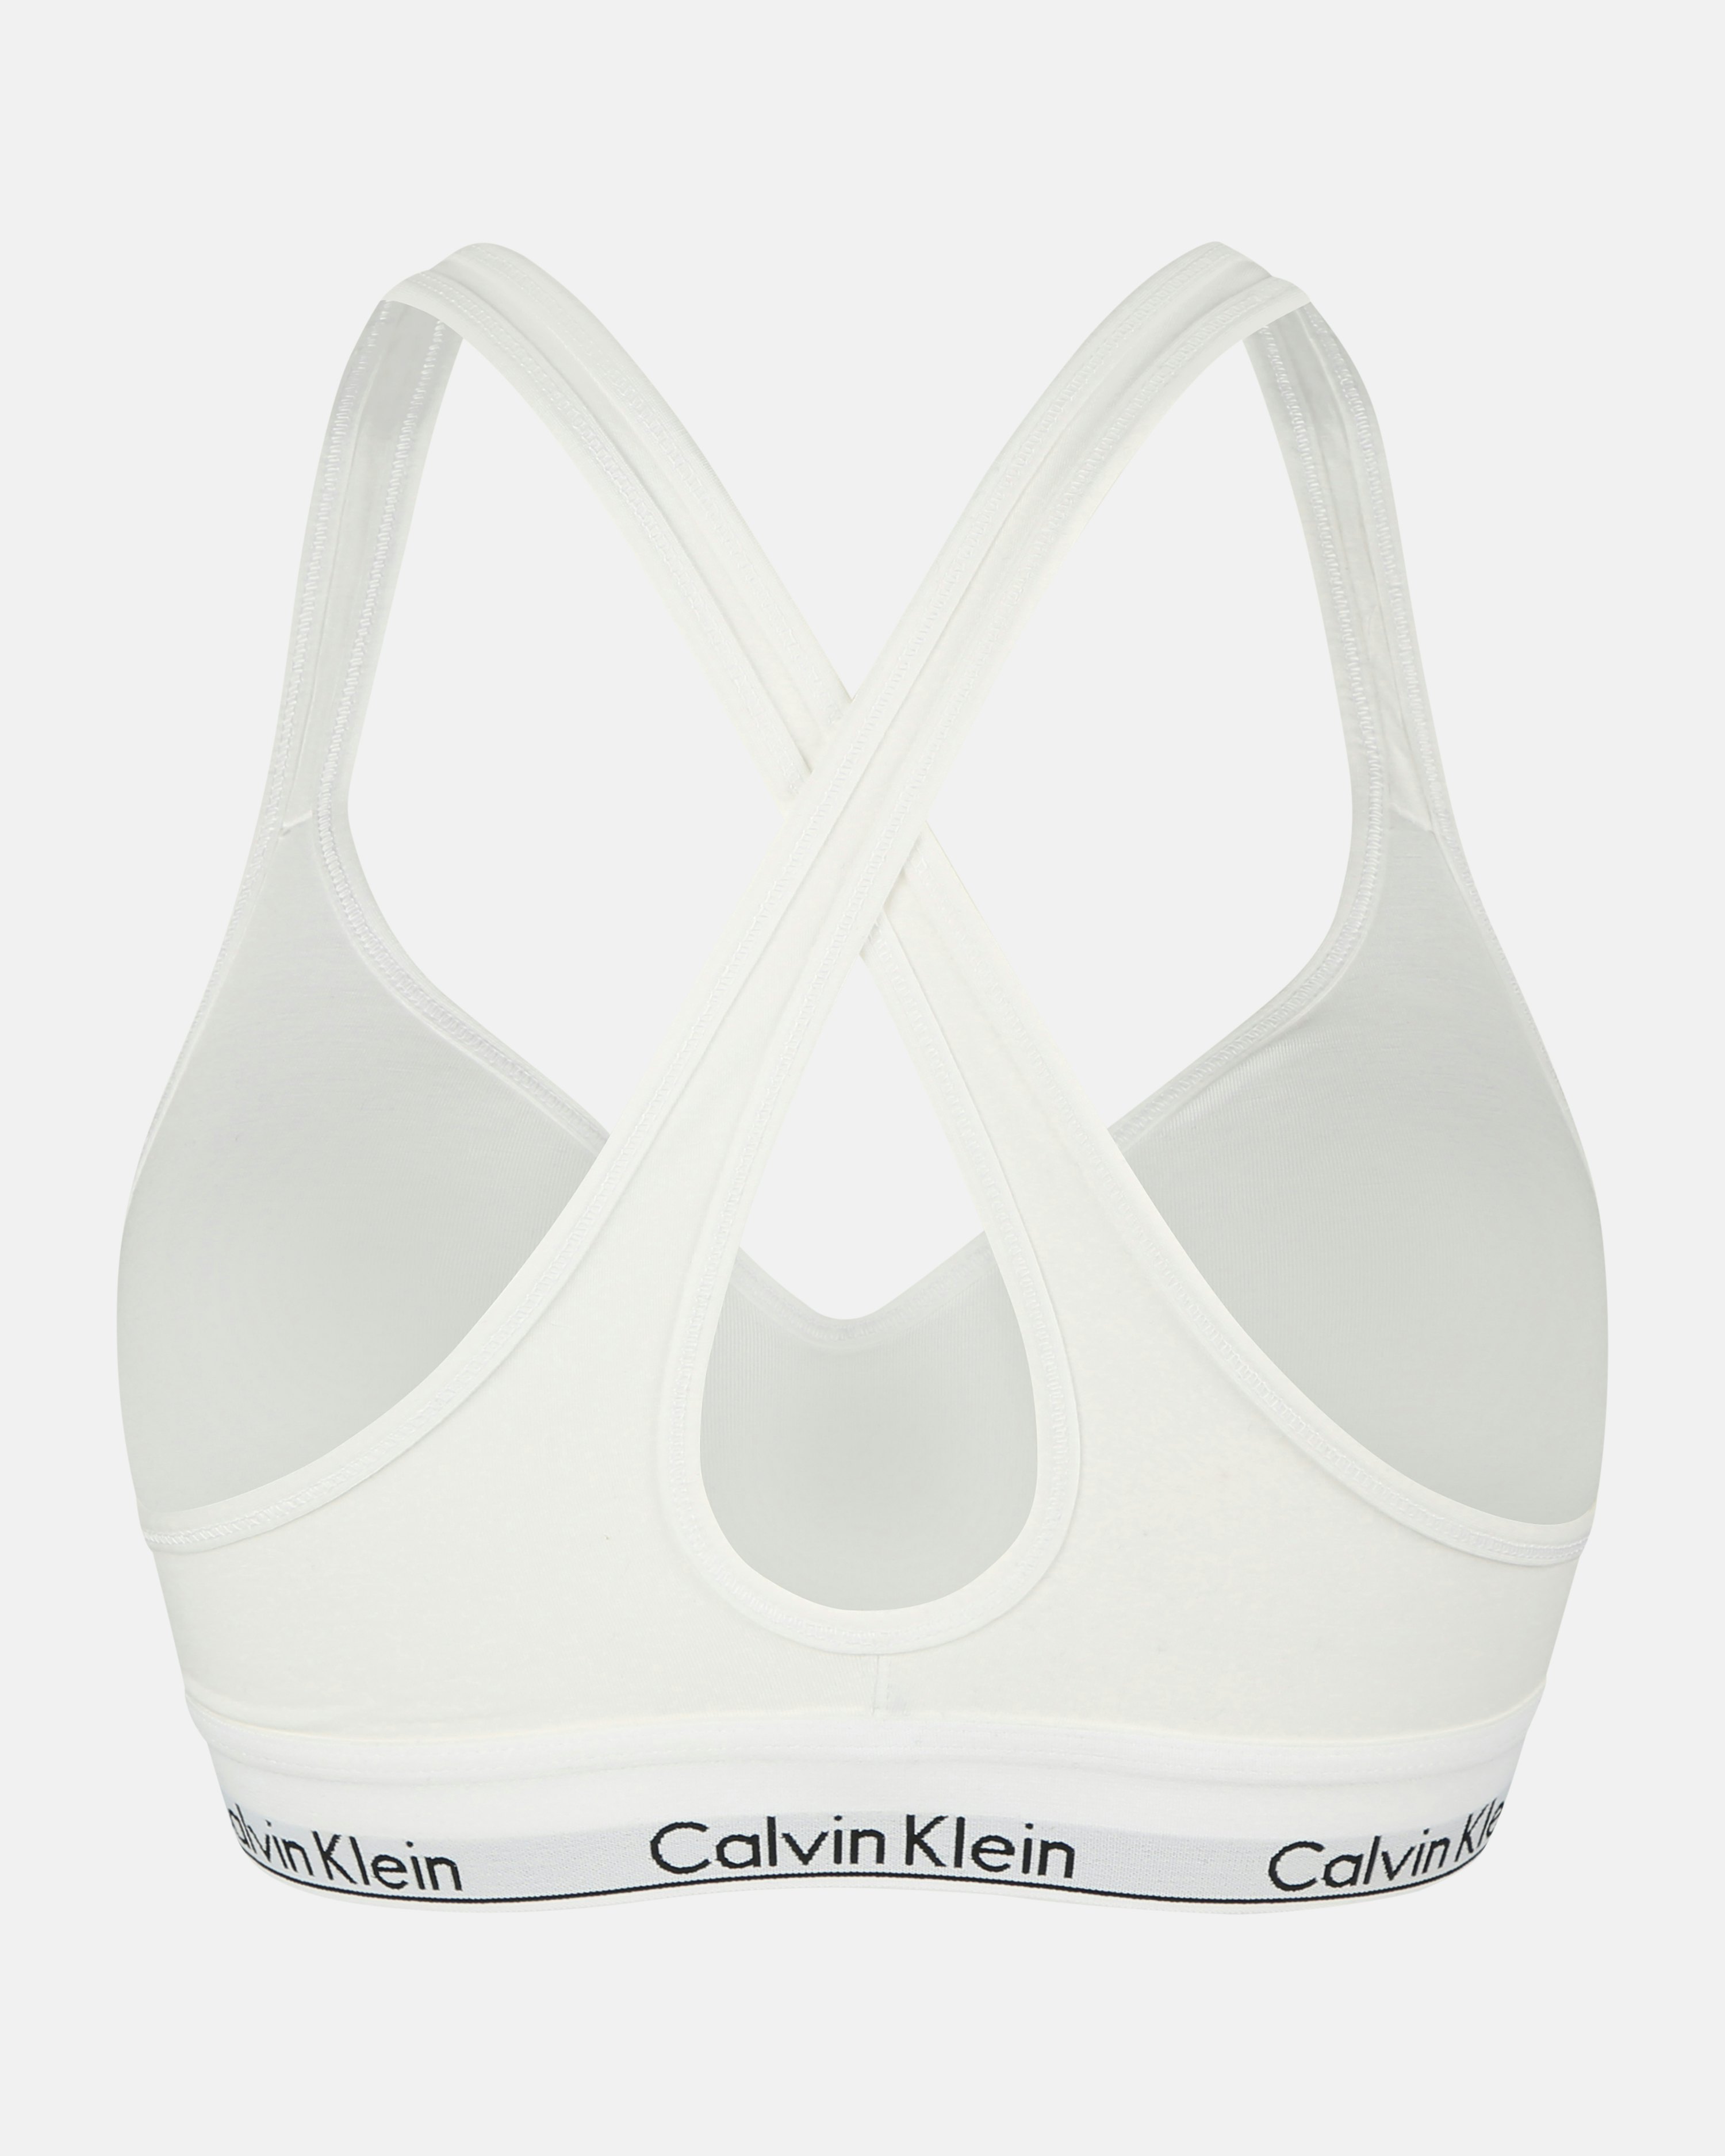 Calvin Klein Women's Bralette Lift Padded Bra, White, L 